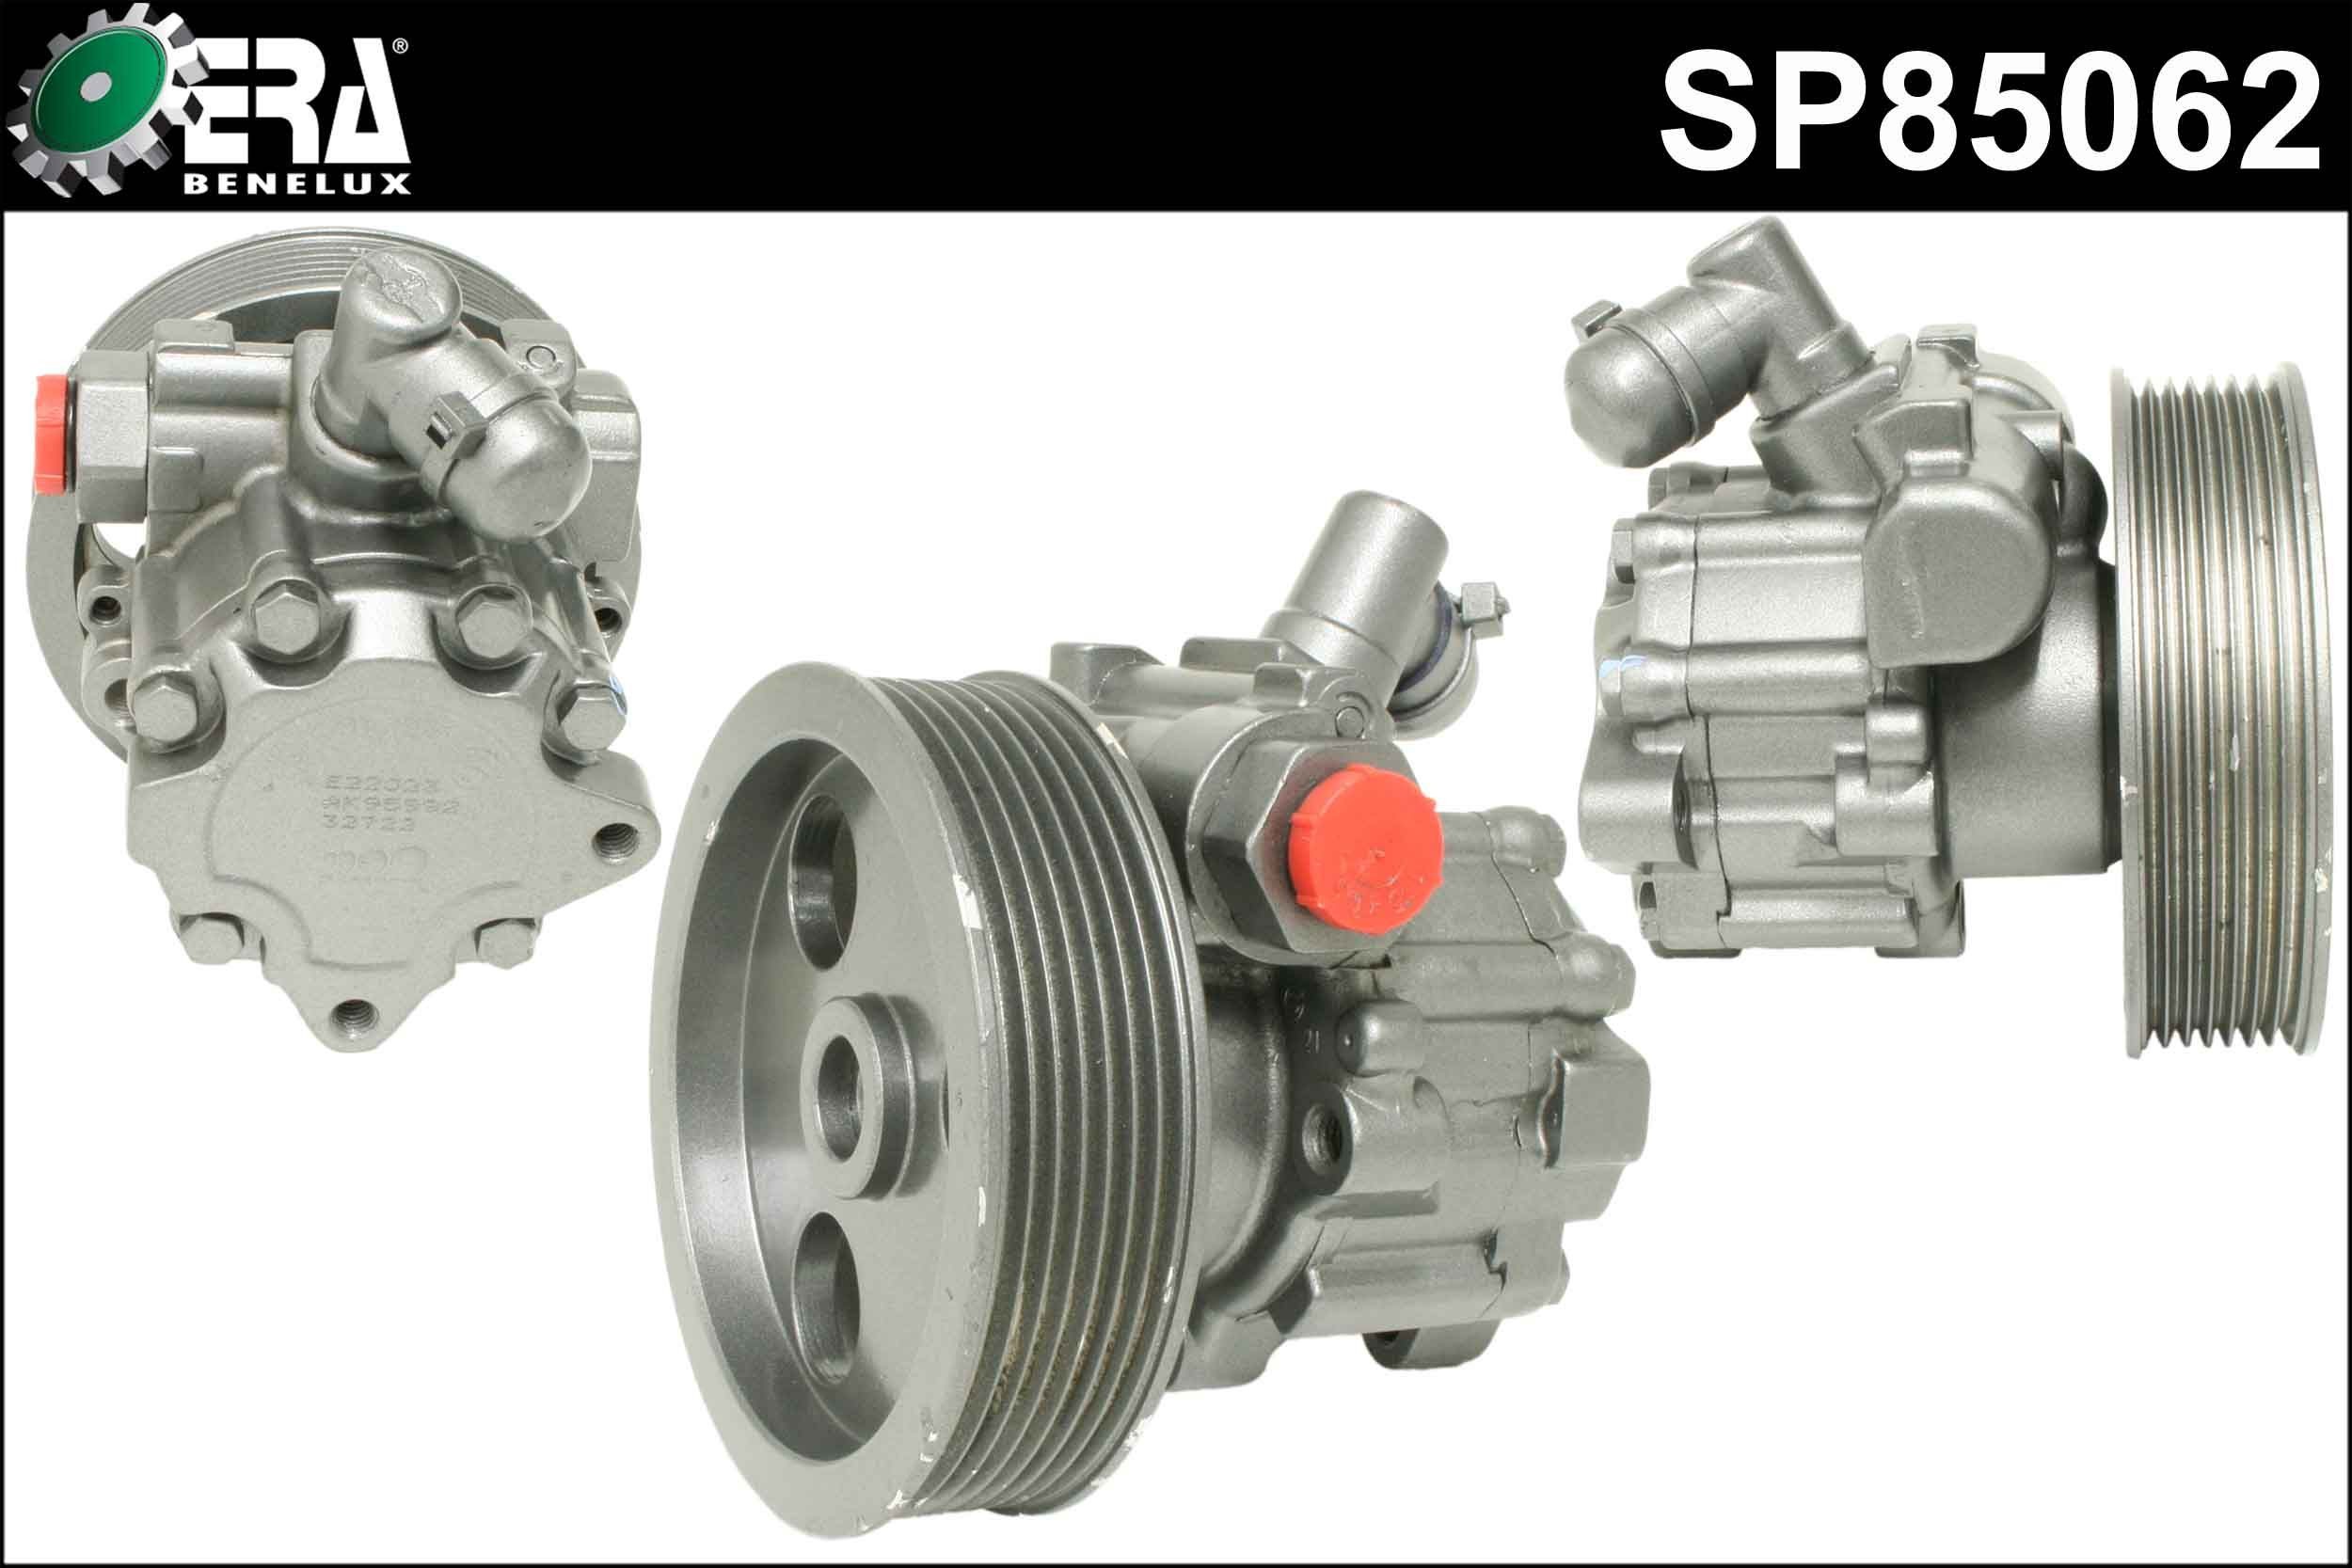 ERA Benelux SP85062 Power steering pump Number of grooves: 7